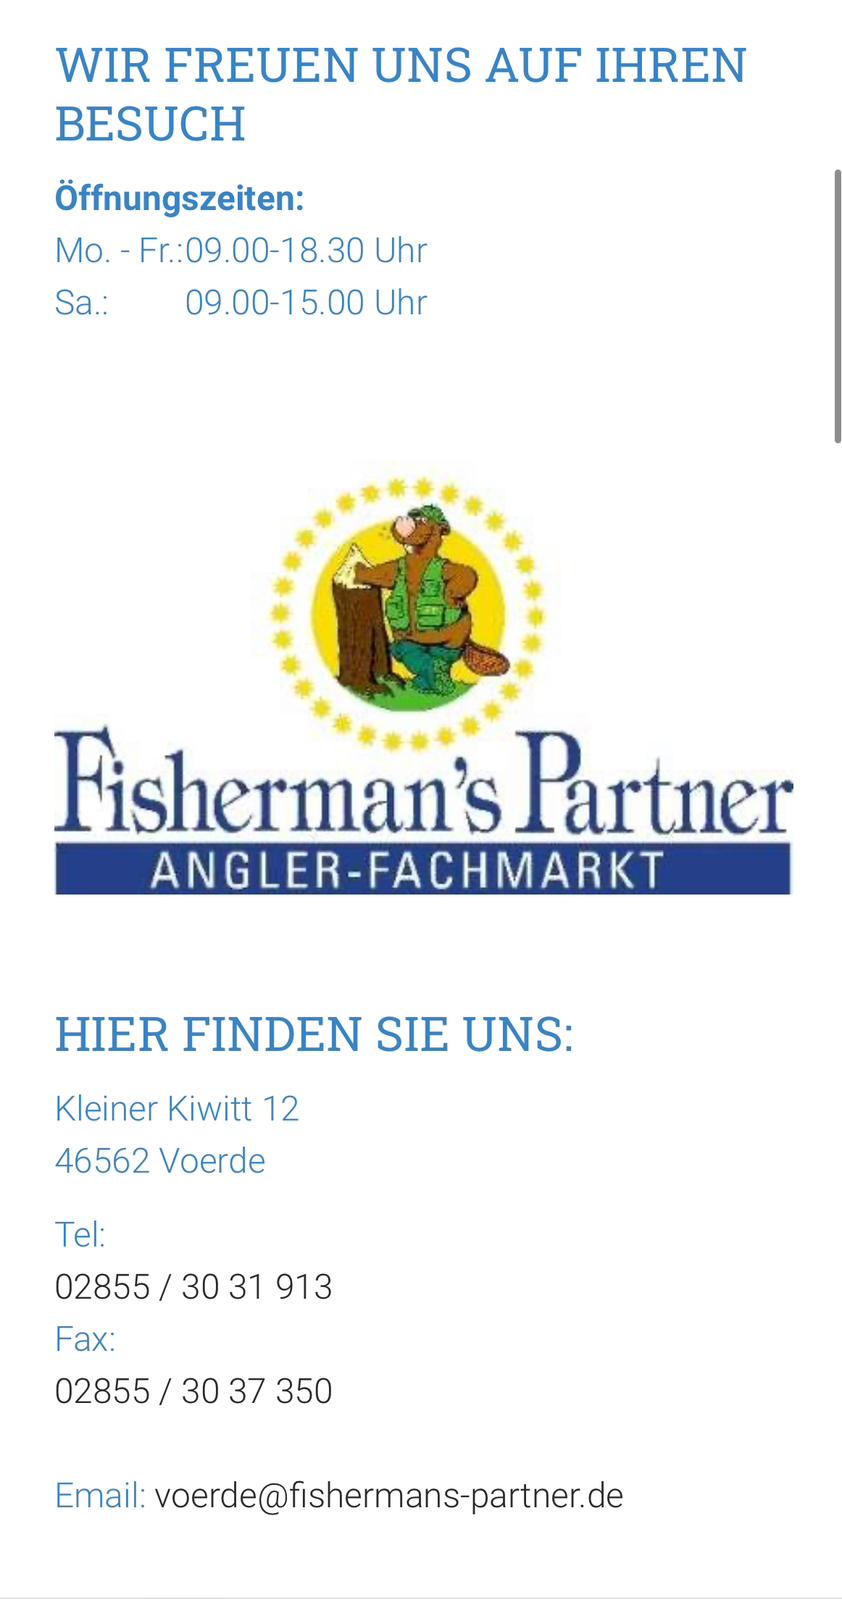 FishermansPartner Kontaktdaten